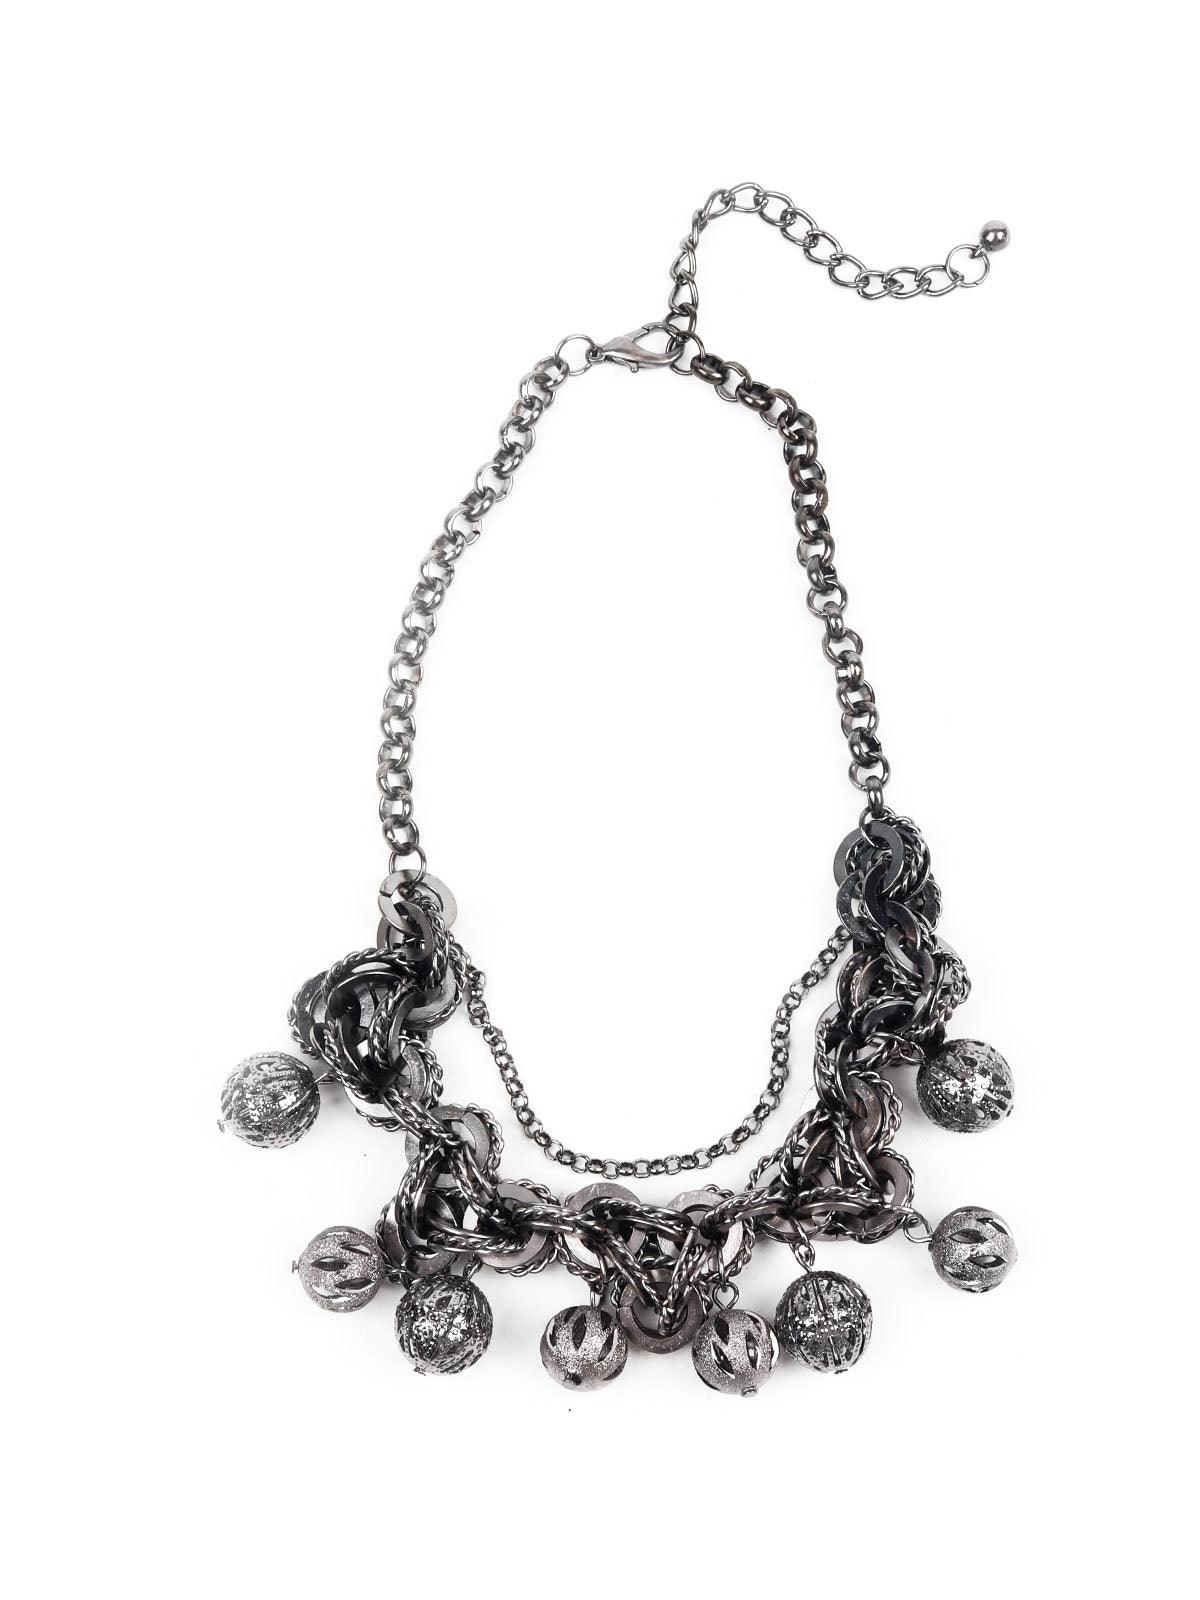 Women's Western Black Choker Necklace - Odette